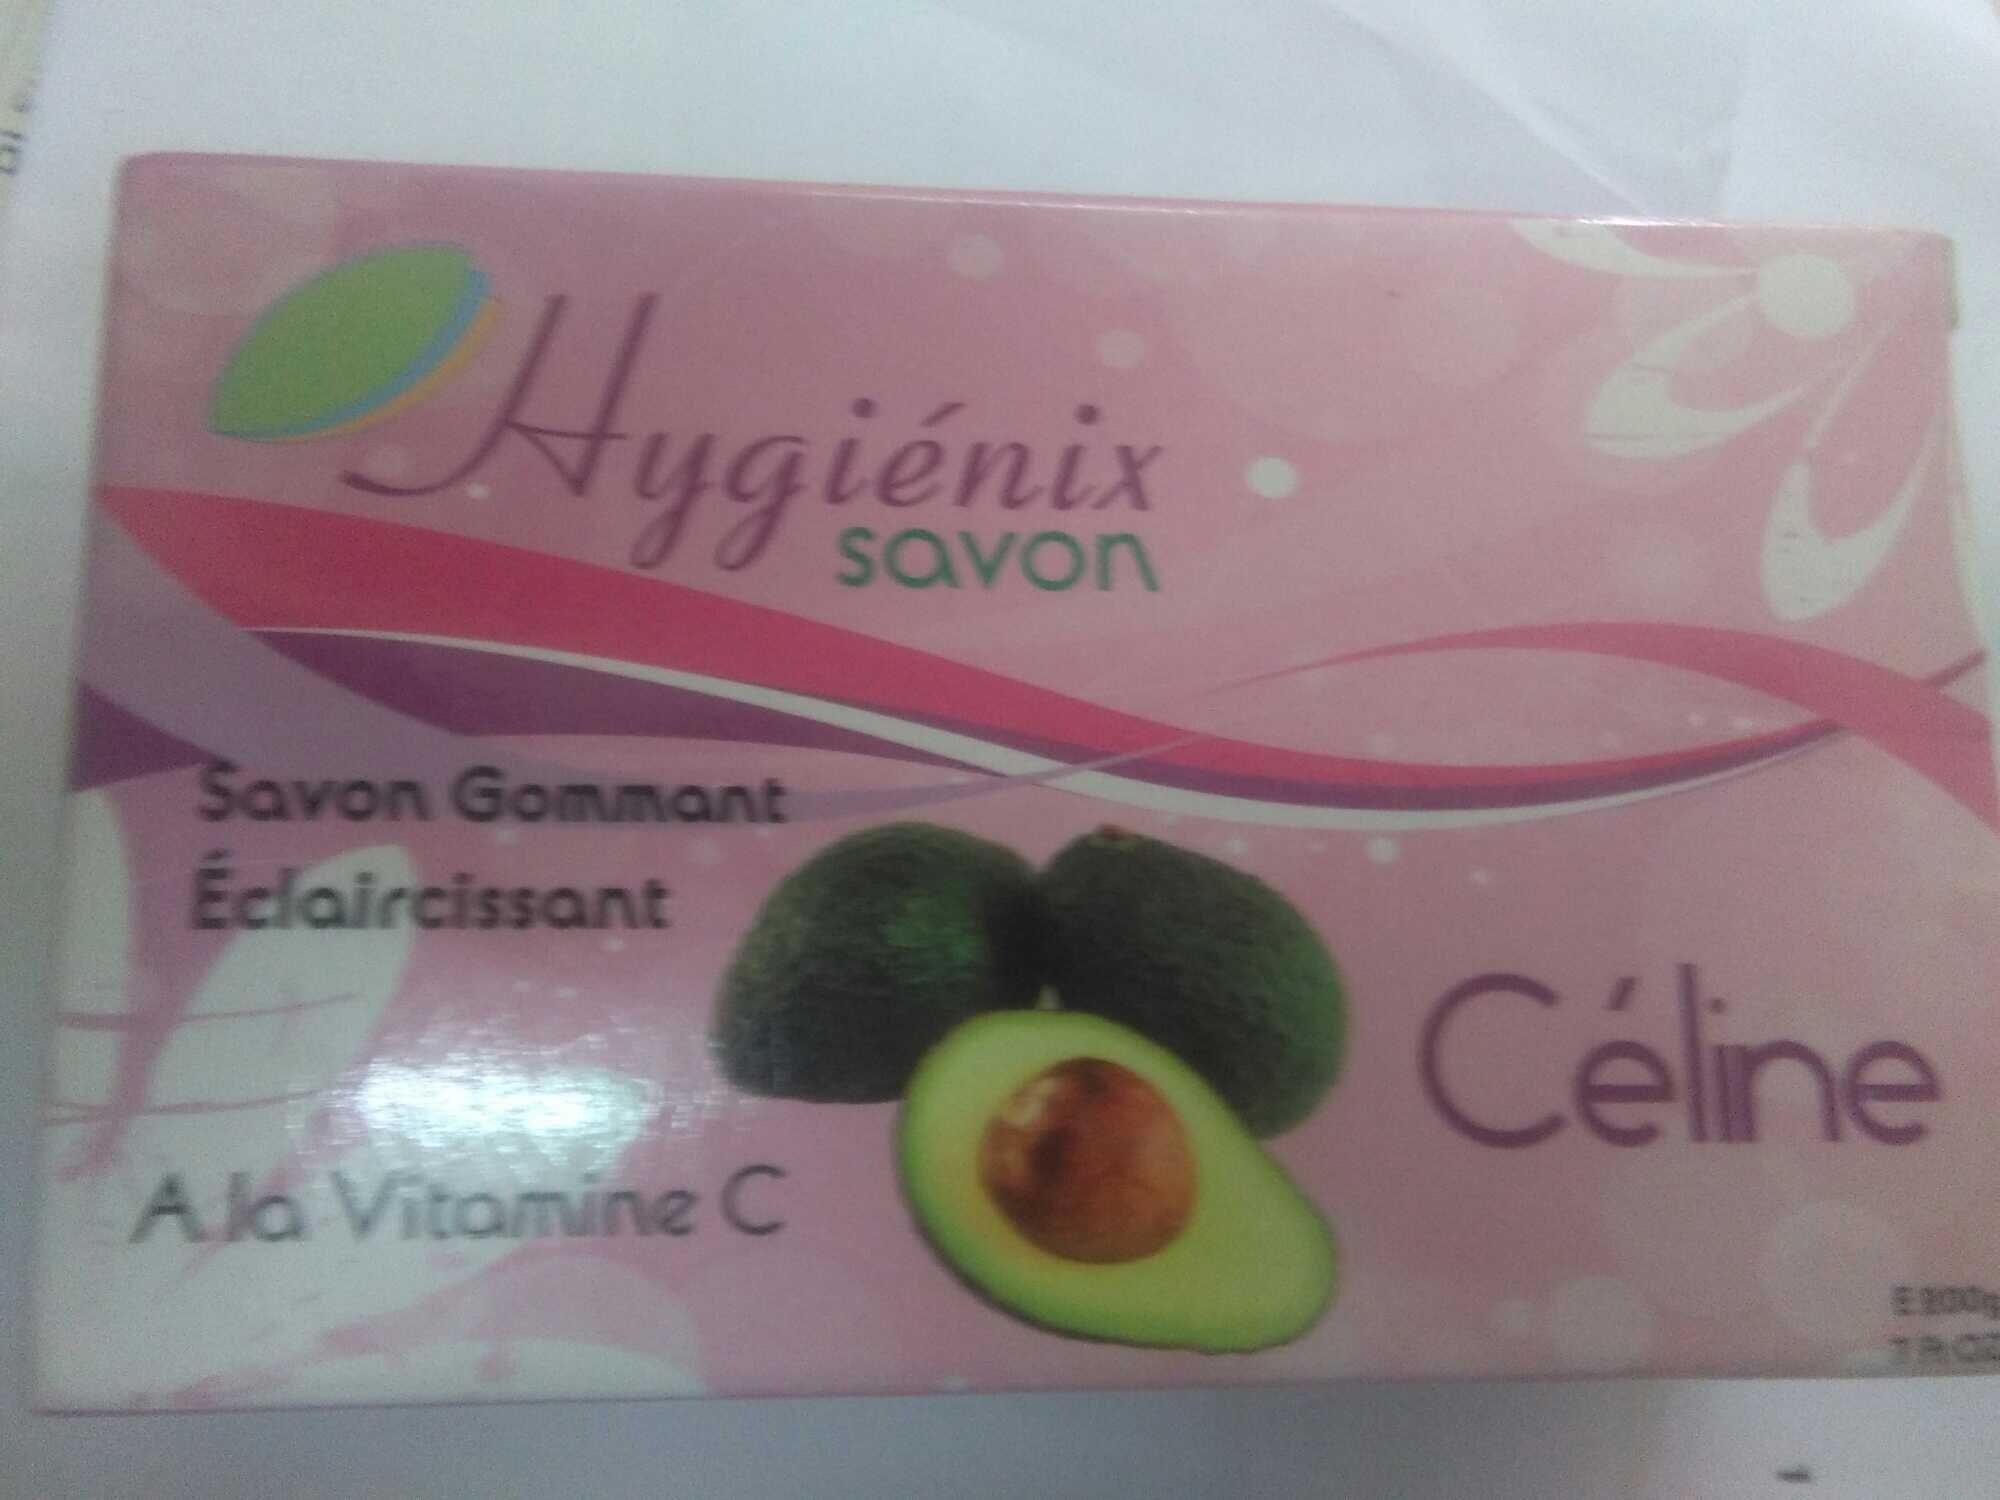 hygiénix savon - 製品 - fr